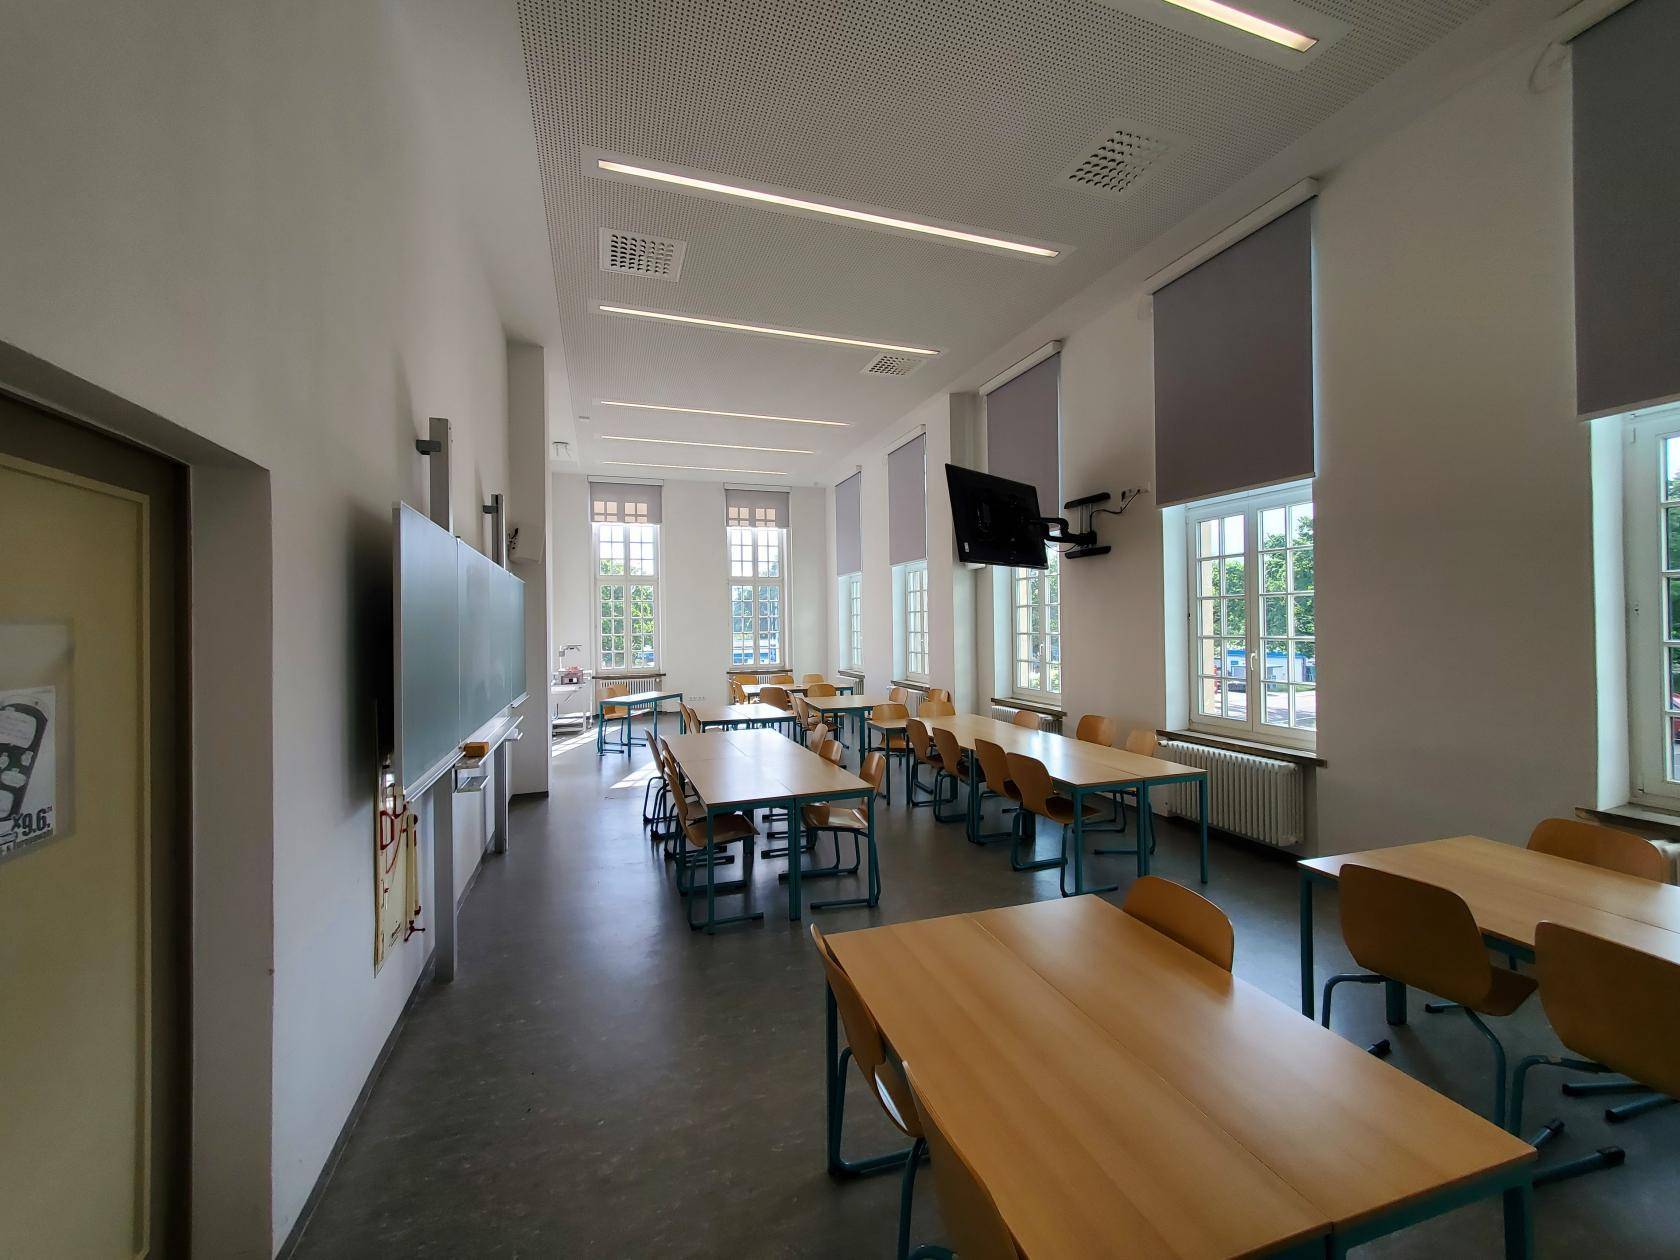 Musterbild Seminarraum Haus 3, Campus Jahnallee mit mehreren frei im Raum stehenden Tischen 